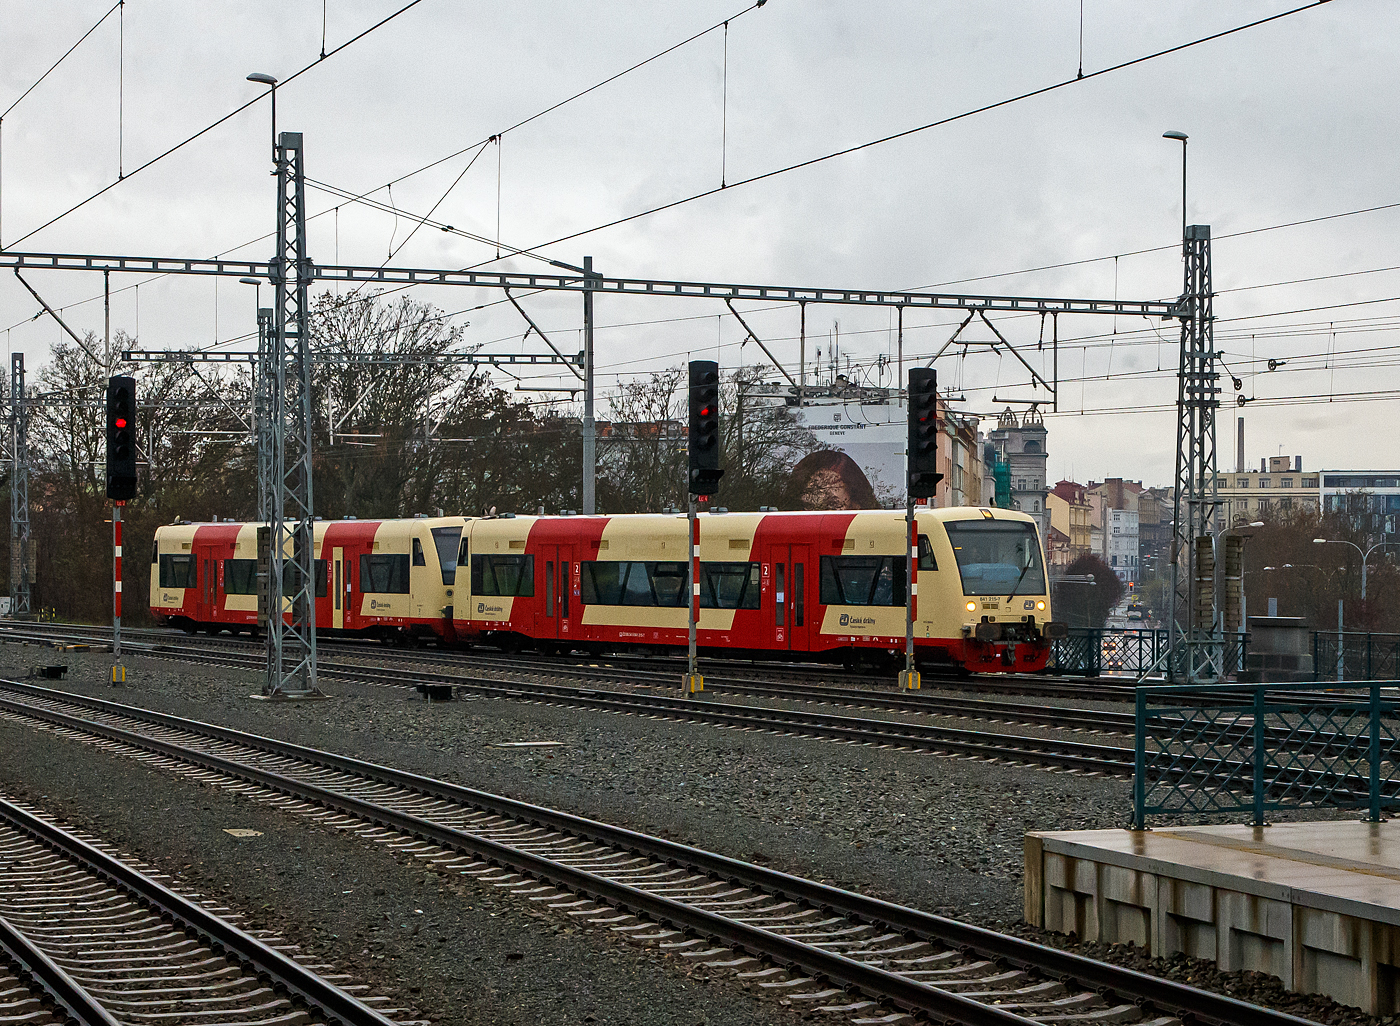 Zwei gekuppelte STADLER Regio-Shuttle RS1 bzw. ČD RegioSpider der ČD (Česk drhy) erreichen am 24.11.2022 den Hauptbahnhof Pilsen (Plzeň hlavn ndra). 

An der Farbgebung kann man es noch erkennen, es sind zwei ehemalige deutsche Triebwagen der Hohenzollerische Landesbahn (HzL). Vorne 841 215-7 (CZ- ČD 95 54 5841 215-7), ex 95 80 0650 618-1 D-HZL, ex HZL VT 215 und hinten der 841 216-5 (CZ- ČD 95 54 5841 216-5), ex 95 80 0650 619-9 D-HZL, ex HZL VT 216. Diese beiden Regio-Shuttle RS1 wurden 1997 von ADtranz (ABB Daimler Benz Transportation) in Berlin (heute Stadler Pankow), unter den Fabriknummern 36578 und 36579, gebaut. Ende 2020 wurden 22 der 24 ex HZL Regioshuttle von der SWEG, ber den Hndler HEROS (Helvetic Rolling Stock GmbH) in Rheinfelden, an die ČD verkauft. Die beiden verbleibenden Fahrzeuge (HZL) werden durch HEROS selbst vermietet. 

Die Fahrzeuge der ČD-Baureihe 841 sind niederflurige Dieseltriebwagen des tschechischen Eisenbahnverkehrsunternehmens Česk drhy (ČD), die seit 2012 im Regionalverkehr zum Einsatz kommen. Sie entsprechen dem in Deutschland weit verbreiteten und bewhrten Typ Stadler Regio-Shuttle RS1. Seit Januar 2013 vermarkten die ČD die Zge als RegioSpider. Diese lteren ehemaligen HZL-Fahrzeuge entsprechen nicht ganz den Daten der neueren Fahrzeuge, die direkt fr die ČD gebaut wurden, daher werden sie auch als BR 841.2 gefhrt.

Der Regioshuttle ist ein vom Unternehmen ADtranz (ABB Daimler Benz Transportation) entwickelter und gebauter Dieseltriebwagen neuer Generation. Durch die bernahme der ADtranz-Sparte durch Bombardier, durfte diese den Regioshuttle aus kartellrechtlichen Grnden seit 2001 nicht mehr fertigen, somit wurde die Rechte und Produktion an Stadler Rail abgegeben.

TECHBISCHE DATEN:
Spurweite: 1.435 mm
Achsfolge: B'B'
Lnge ber Puffer: 25.500 mm
Lnge Wagenkasten: 24.260 mm
Drehzapfenabstand: 17.100 mm
Achsstand im Drehgestell: 1.800 mm
Federung: 2 luftgefederte Triebdrehgestelle
Eigengewicht: 42 t
Motor: 2 Stck 12l Dieselmotoen mit je 257 KW (350 PS)
Leitungsbertragung: hydromechanisch
Getriebe: 2 Stck Voith-Diwabus Getriebe U 86
Hchstgeschwindigkeit: 120 km/h
Beschleunigung: 1,2 m/s
Einstiegshhe:  600 mm
Fahrgastraum: klimatisiert
Pltze: 70 Sitzpltze, davon 18 als Klappsitze, 88 Stehpltze
Niederfluranteil: 65% bezogen auf die Lnge des Fahrgastraumes
Tren: Vier 2-flgelige Automatik-Schwenkschiebetren
Einstiegshilfe je Fahrzeugseite: Rollstuhl-Hublift an Tr L1 und R1
WC: behindertengerecht